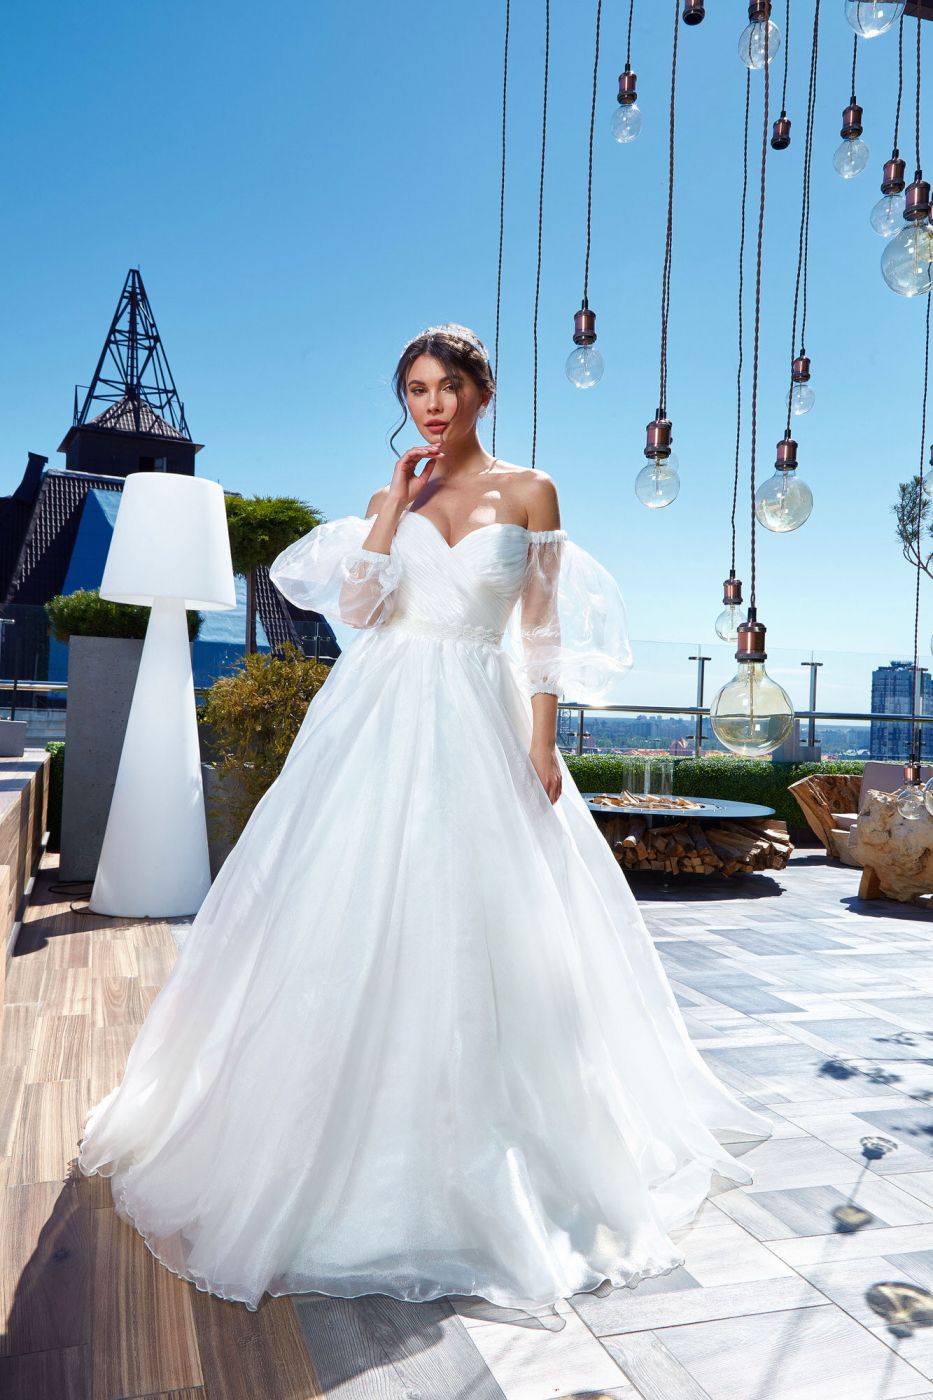 Пышное воздушное свадебное платье с открытыми плечами и объемными рукавами Арт. 097